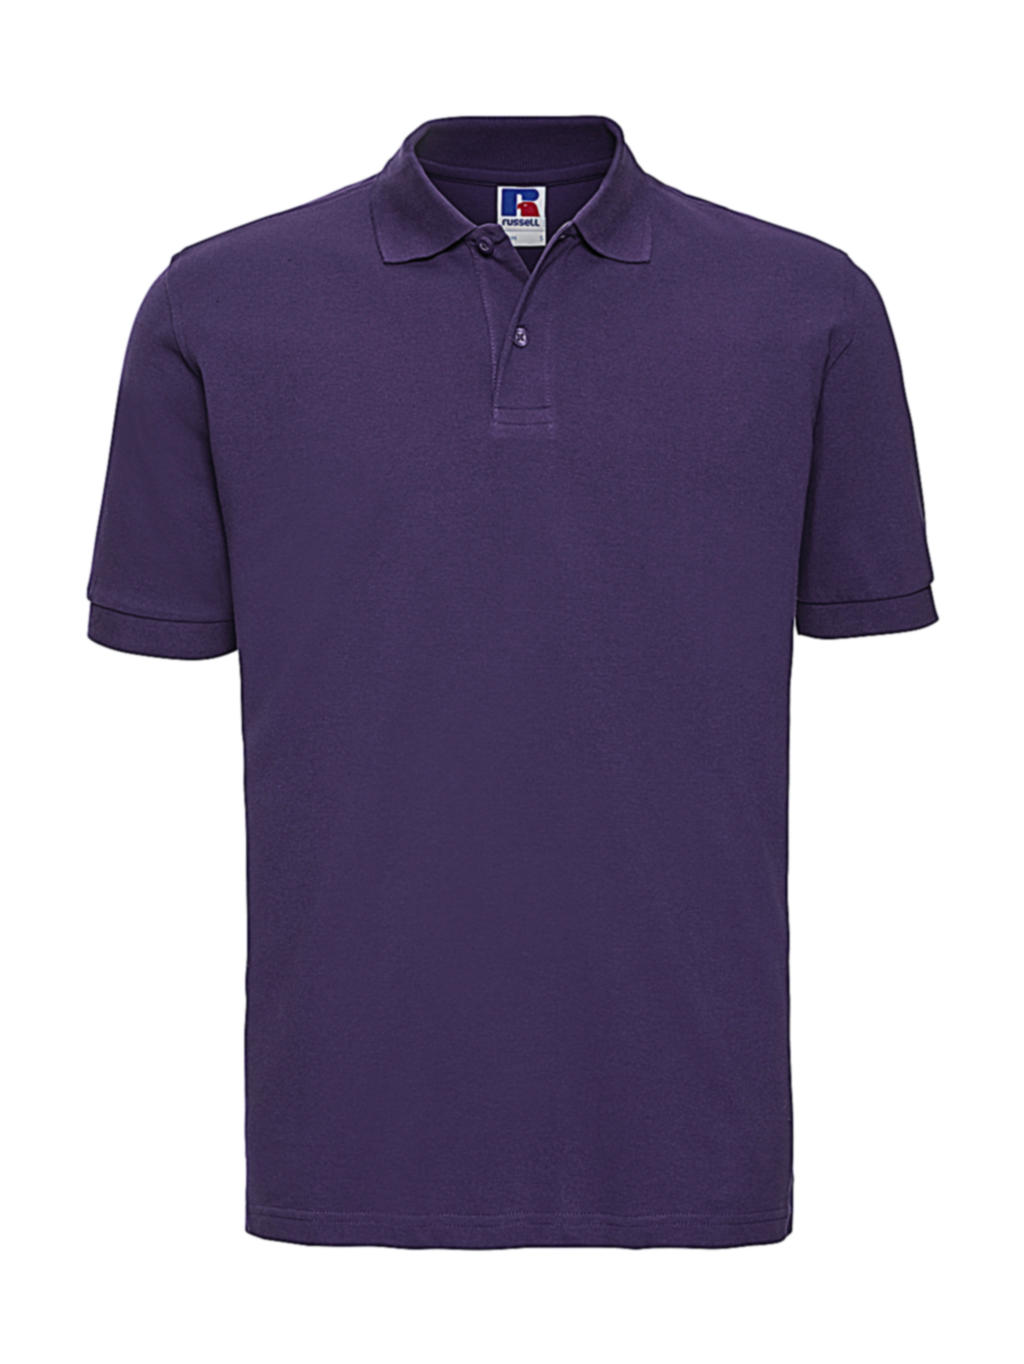  Mens Classic Cotton Polo in Farbe Purple